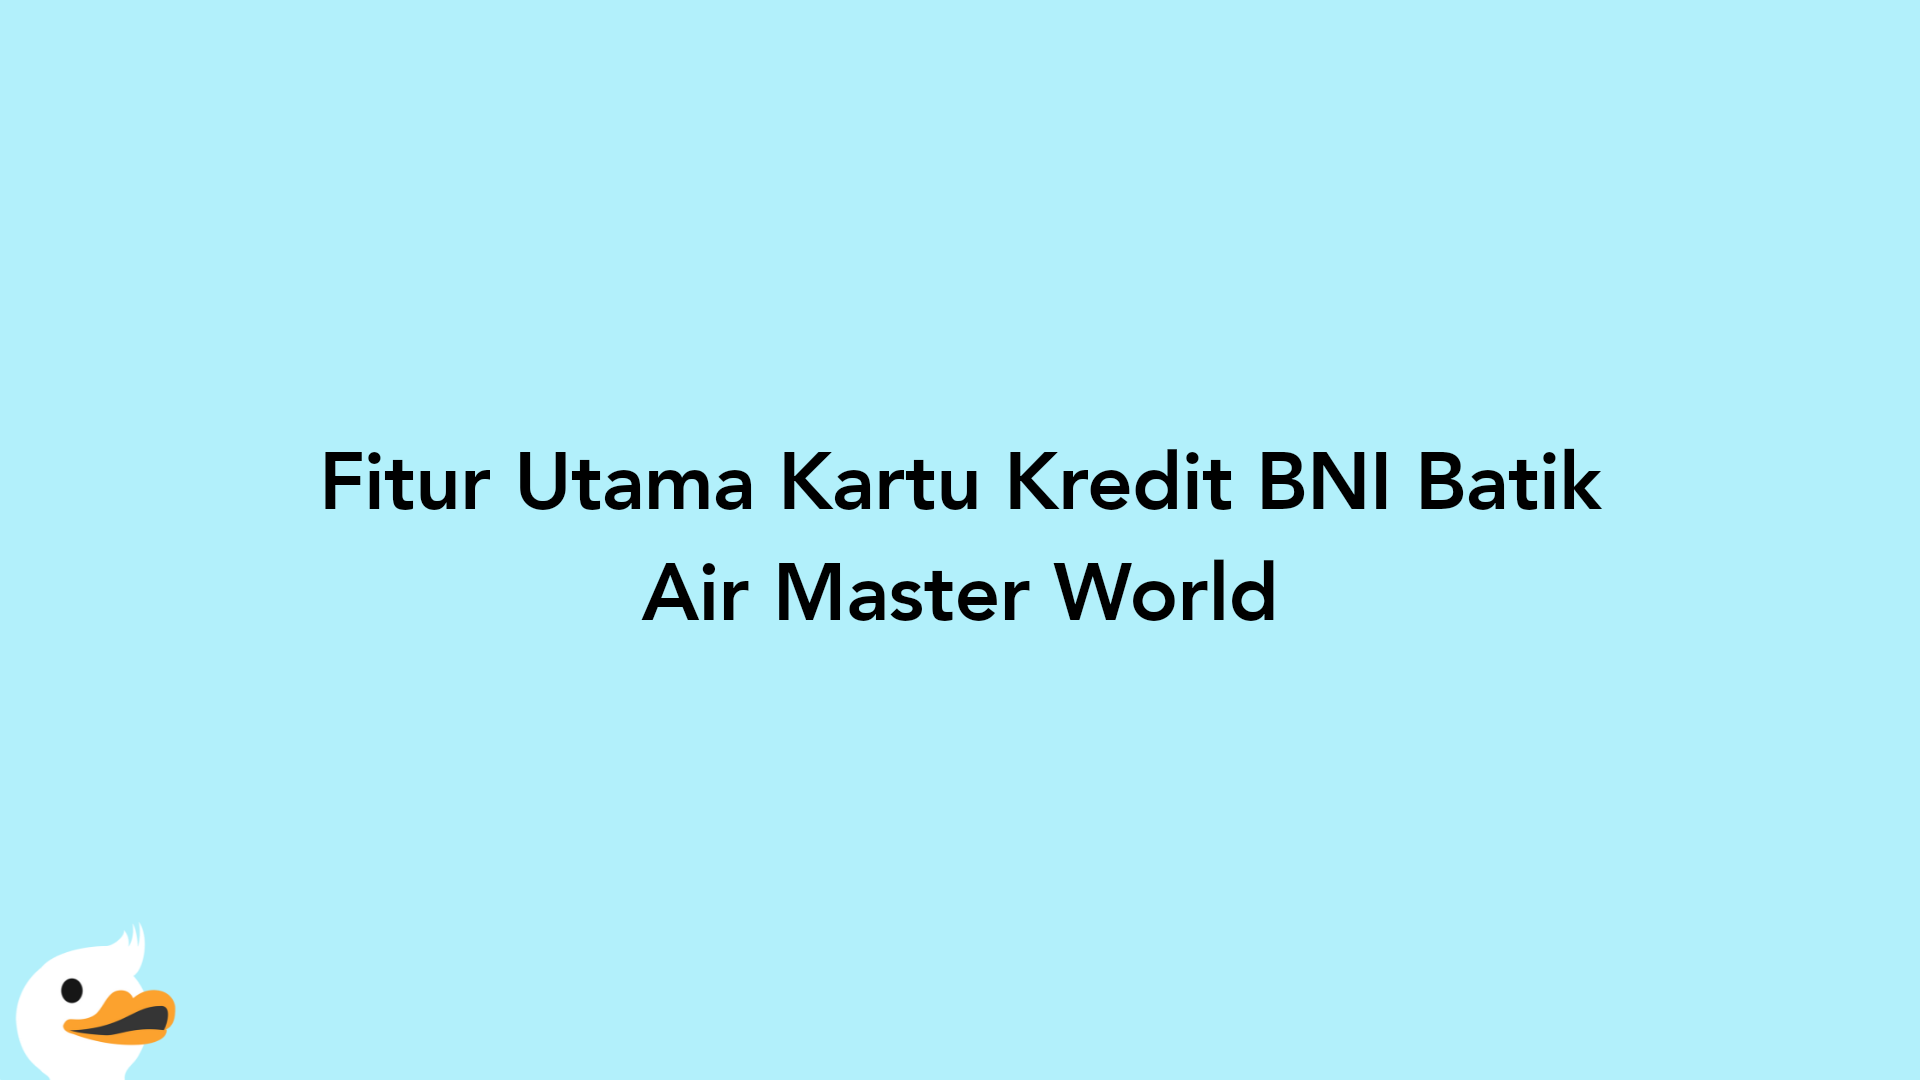 Fitur Utama Kartu Kredit BNI Batik Air Master World